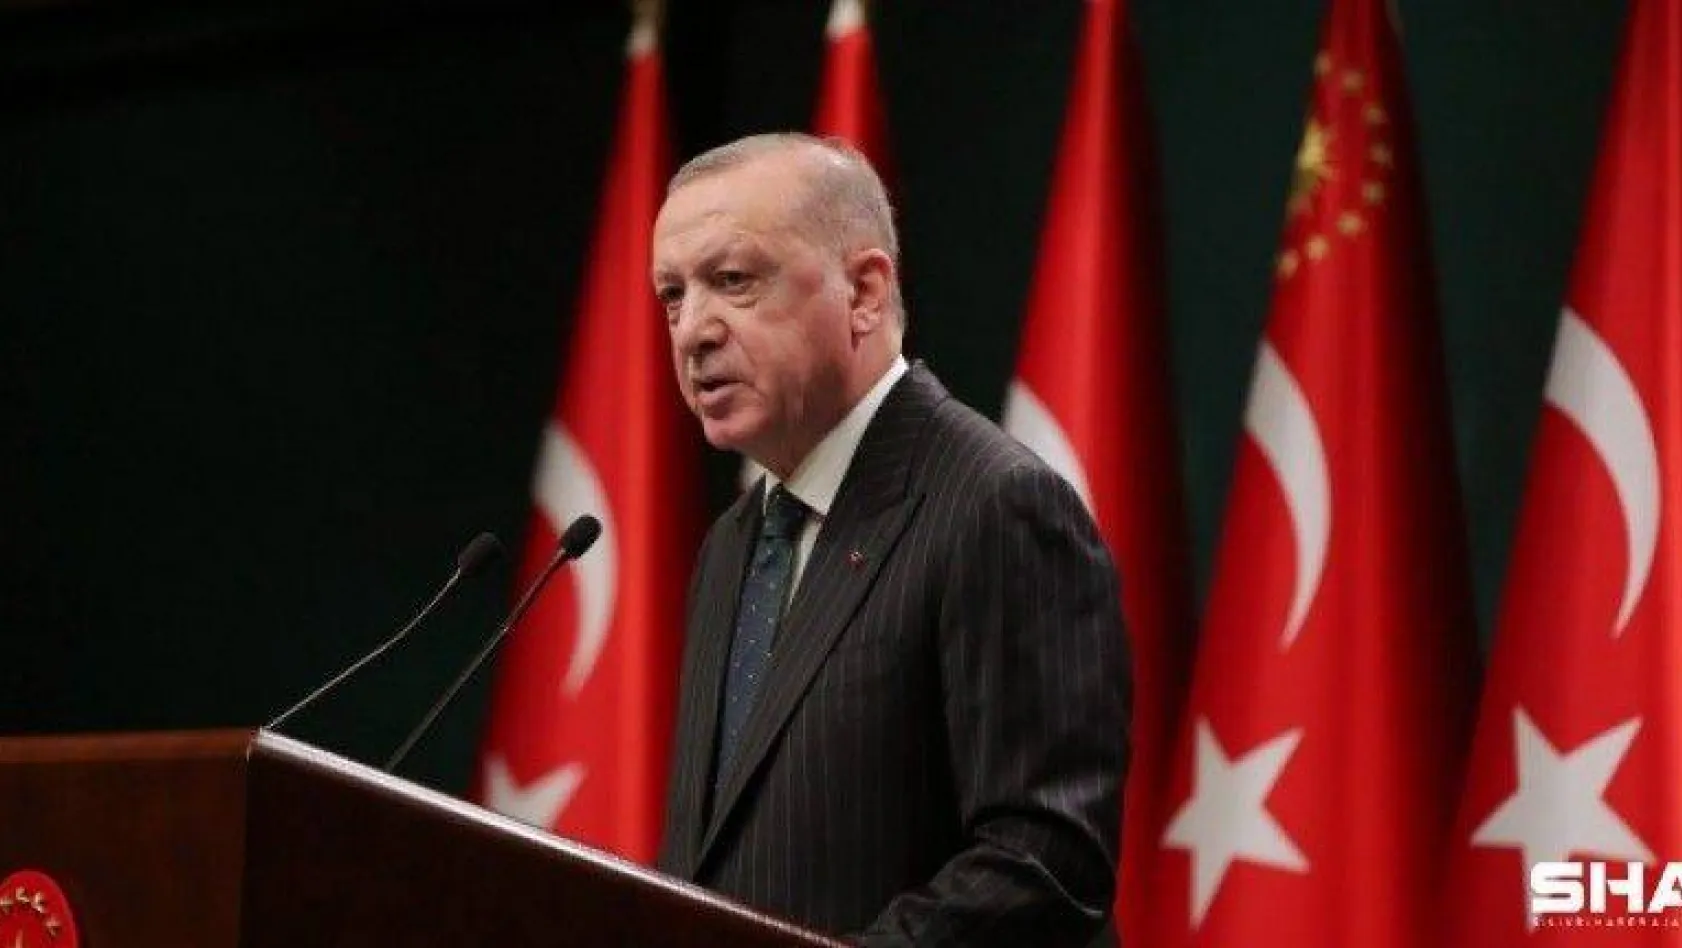 Cumhurbaşkanı Erdoğan'dan memur ve esnaflara müjde